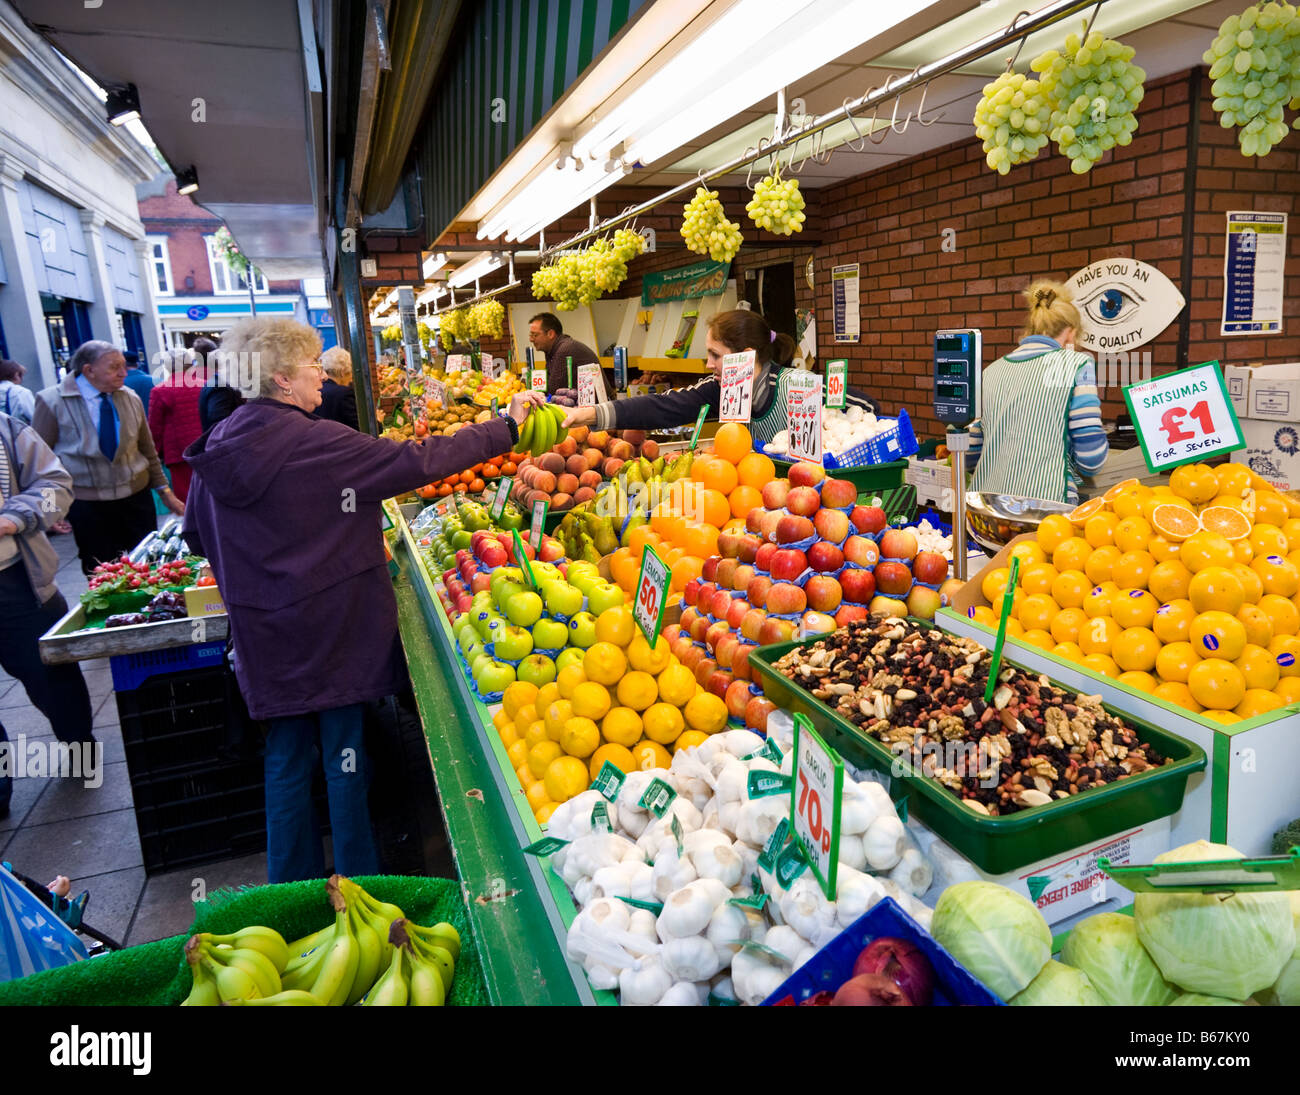 British mercato coperto con il cliente acquistare frutta e verdura fresca da uno stallo, England, Regno Unito Foto Stock